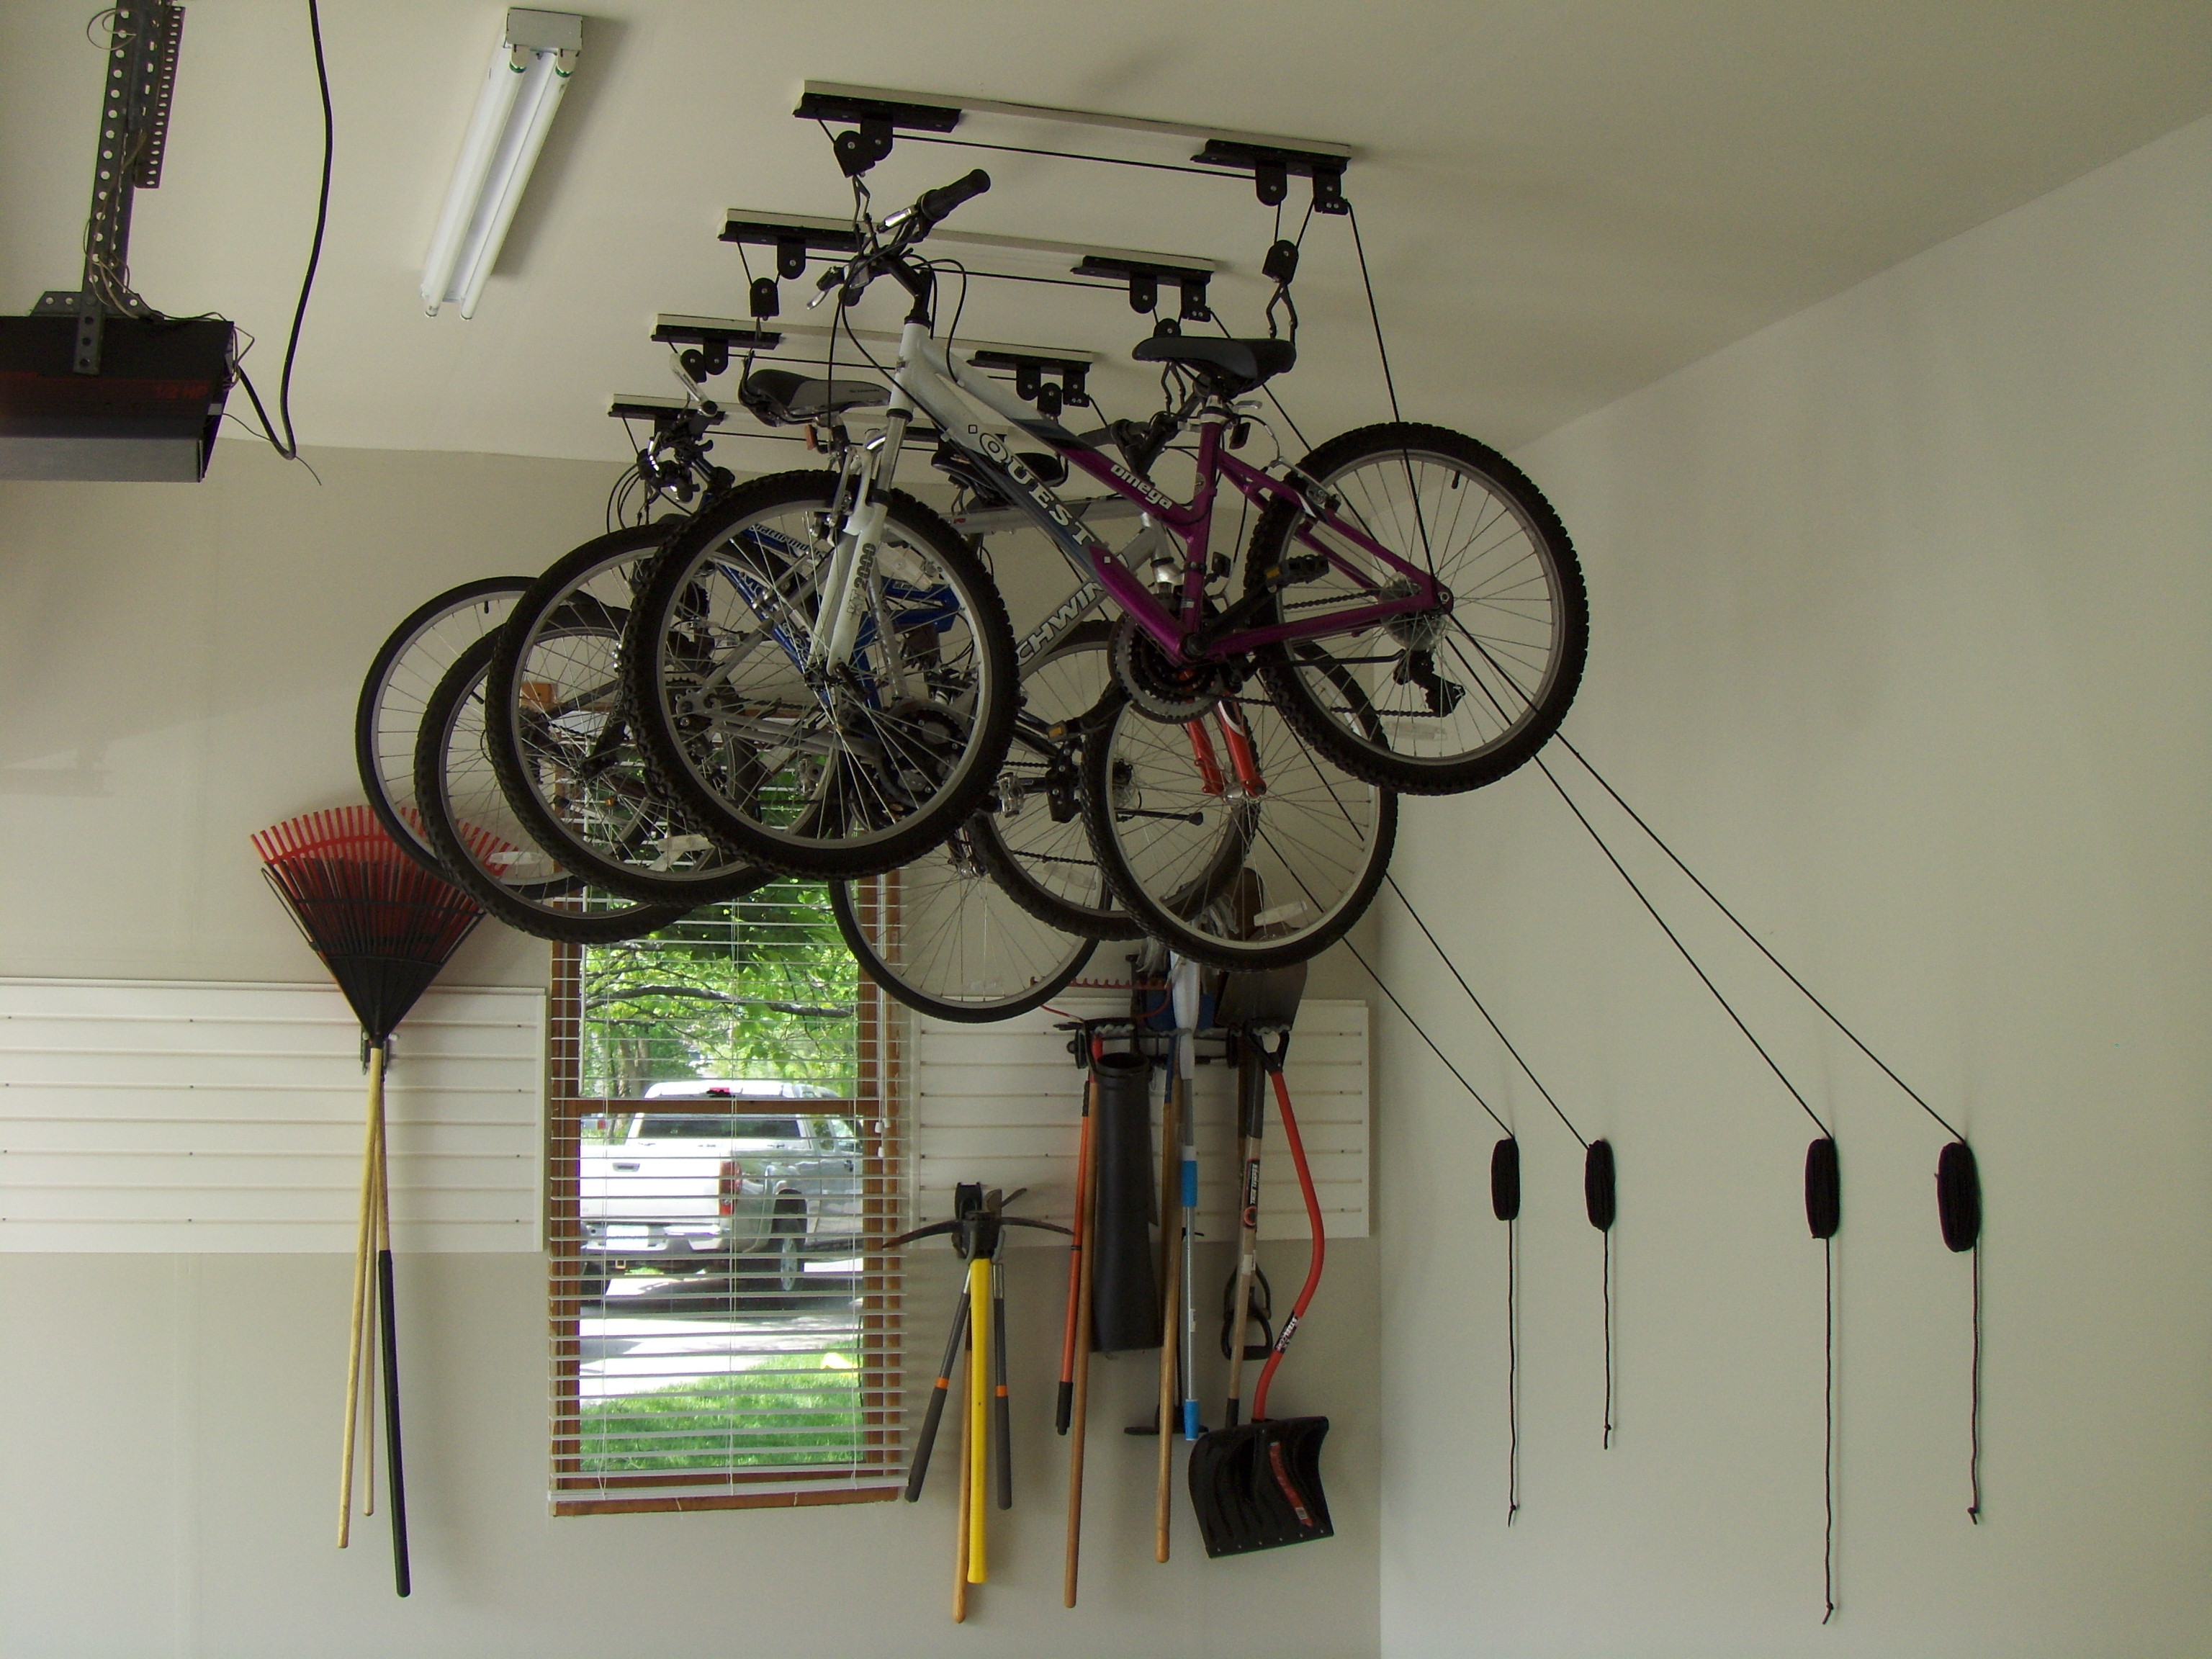 Best ideas about Bike Garage Storage
. Save or Pin True Wheels Bike Shop Tip of the Week Bike Storage Now.